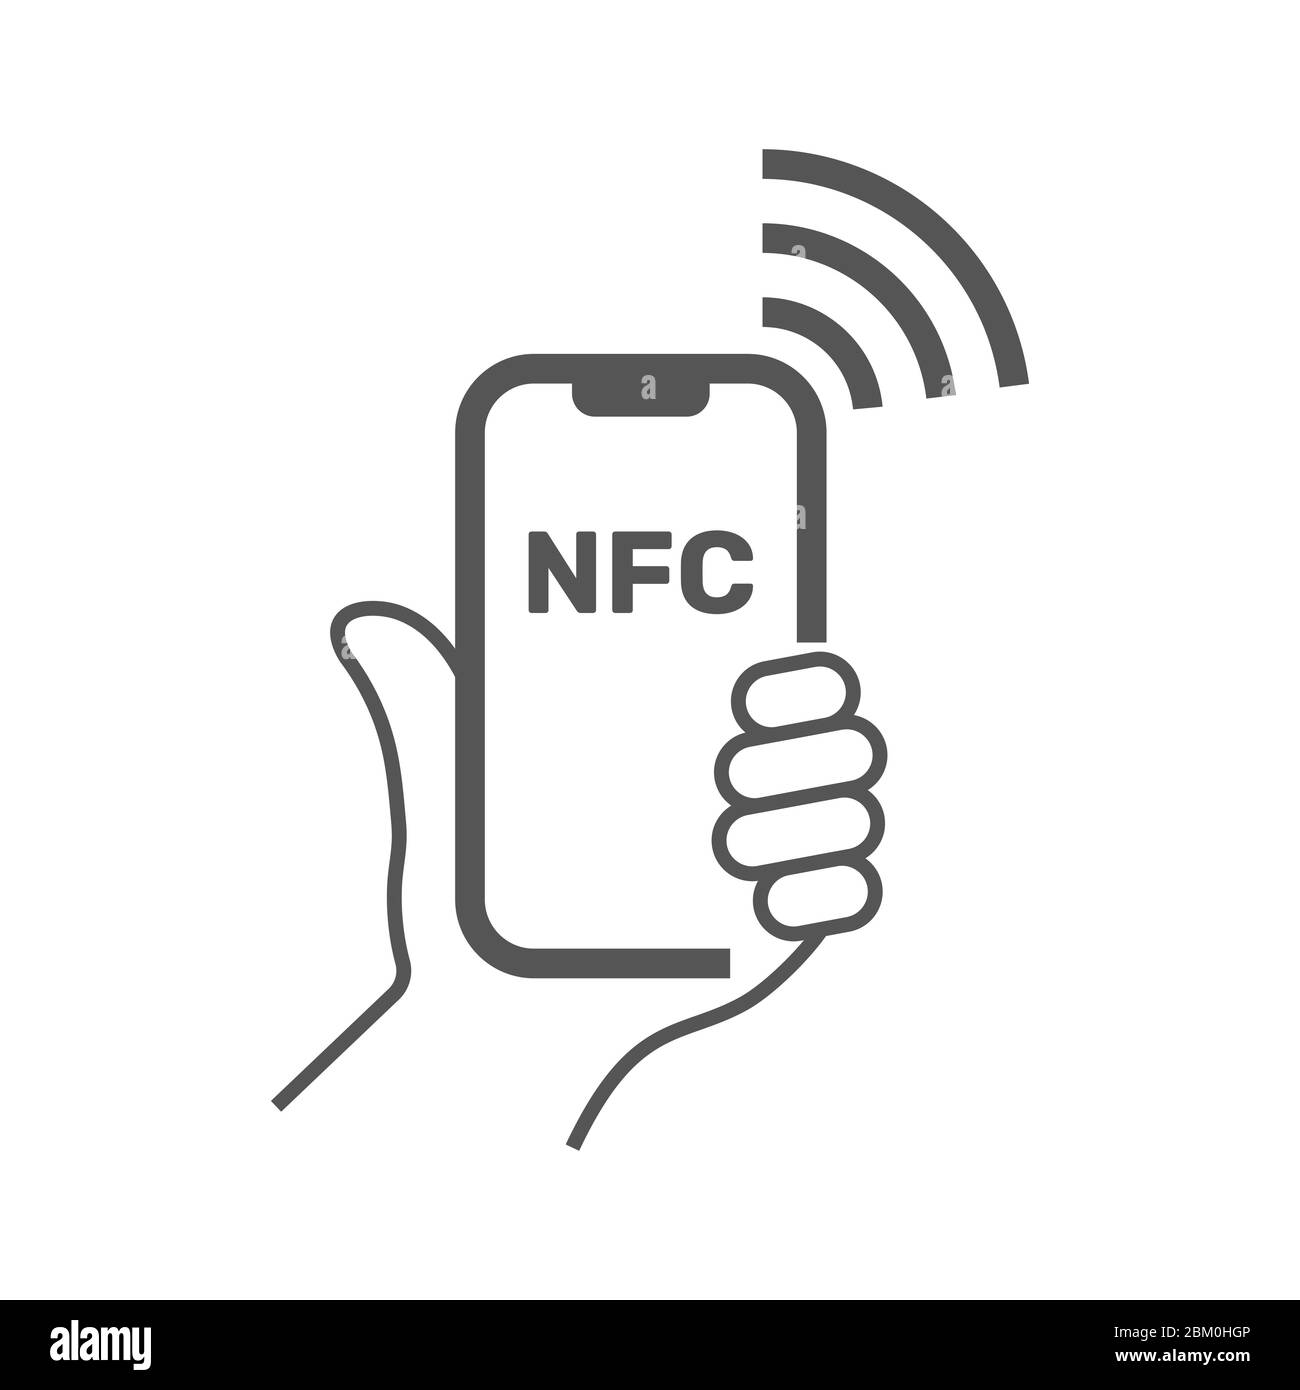 Near Field Communication, telefono cellulare con modulo NFC in mano, il pagamento tramite smartphone, NFC linea del vettore icona per app e siti web. Corsa modificabile Illustrazione Vettoriale